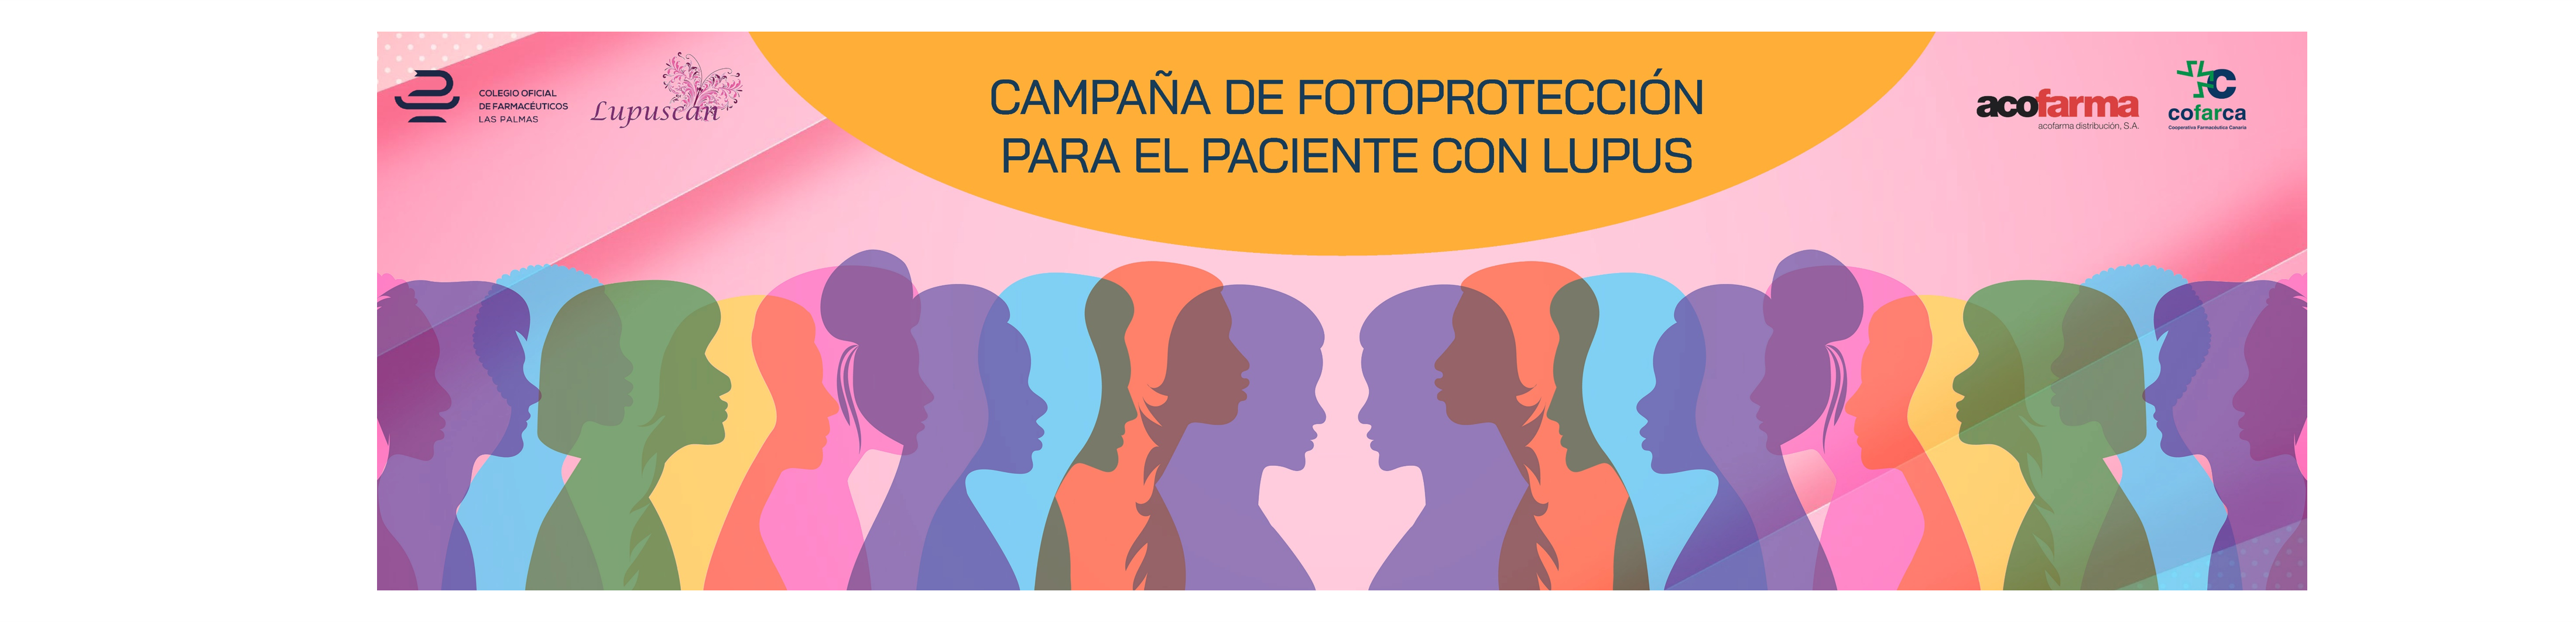 Campaña Fotoprotección para el paciente con lupus